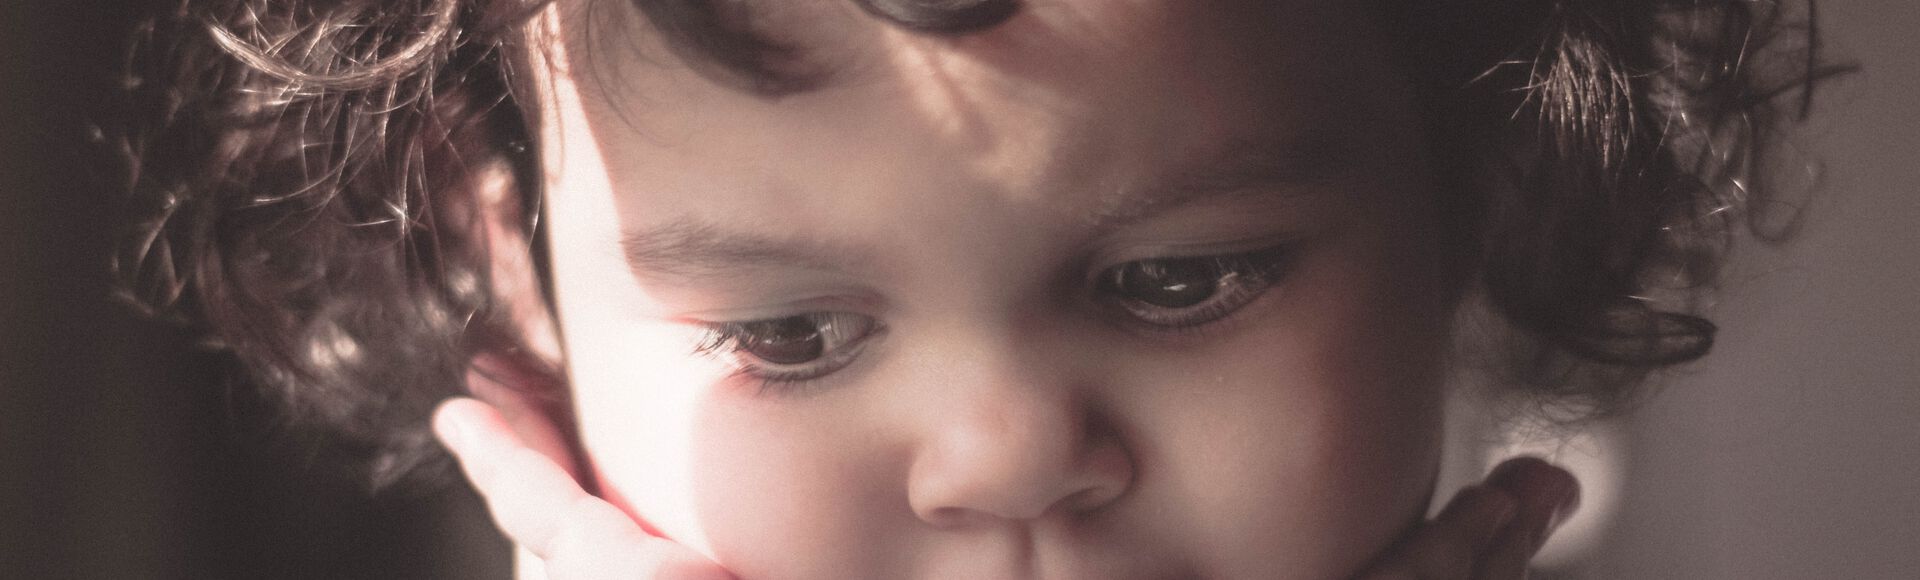 Criança com as maõs no rosto demonstra excesso de timidez na infância